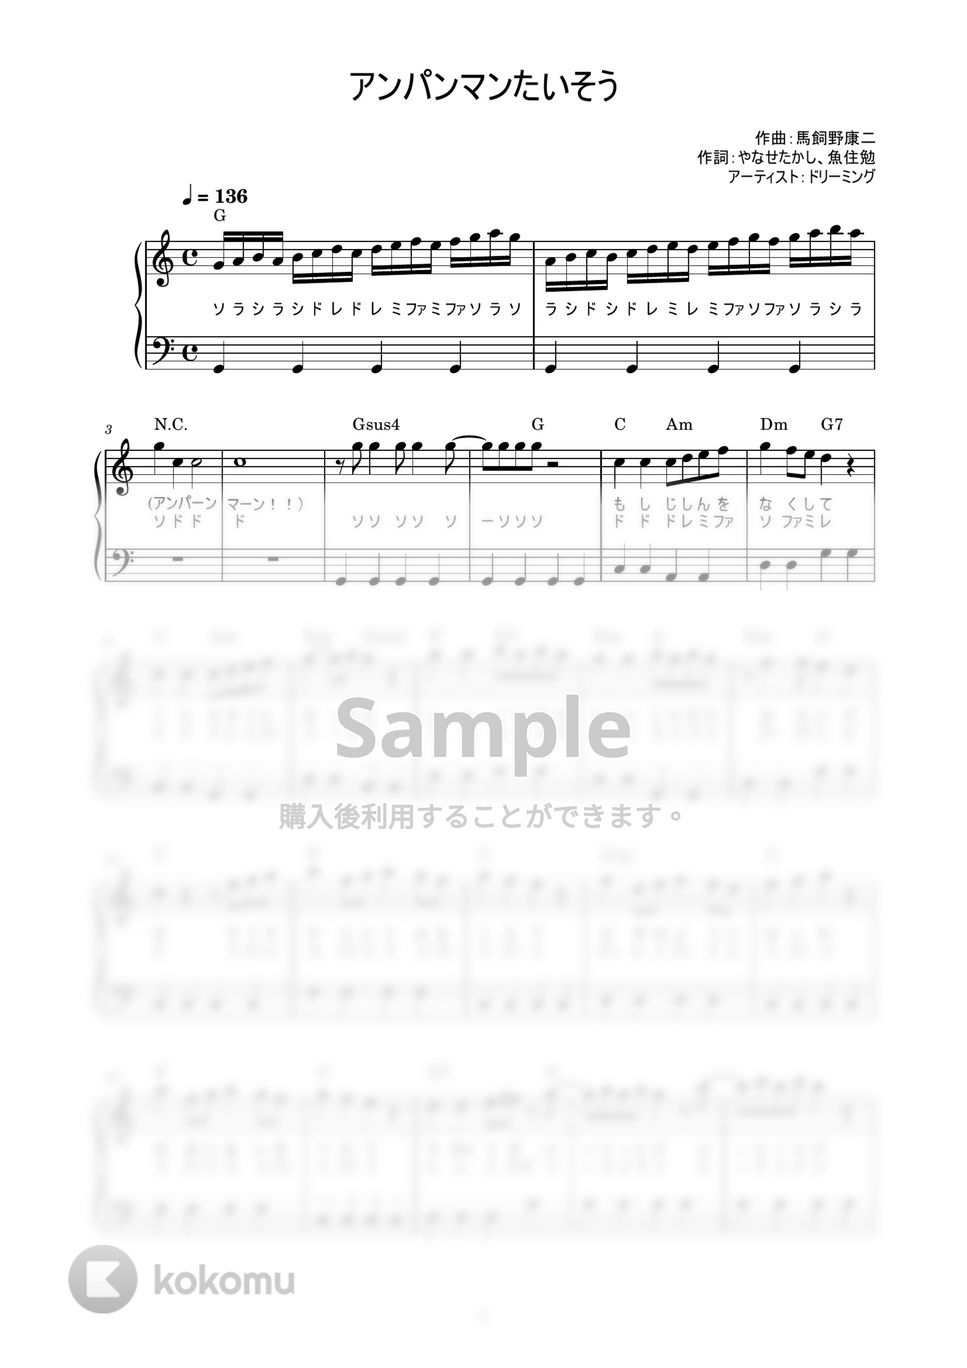 ドリーミング - アンパンマンたいそう (かんたん / 歌詞付き / ドレミ付き / 初心者) by piano.tokyo